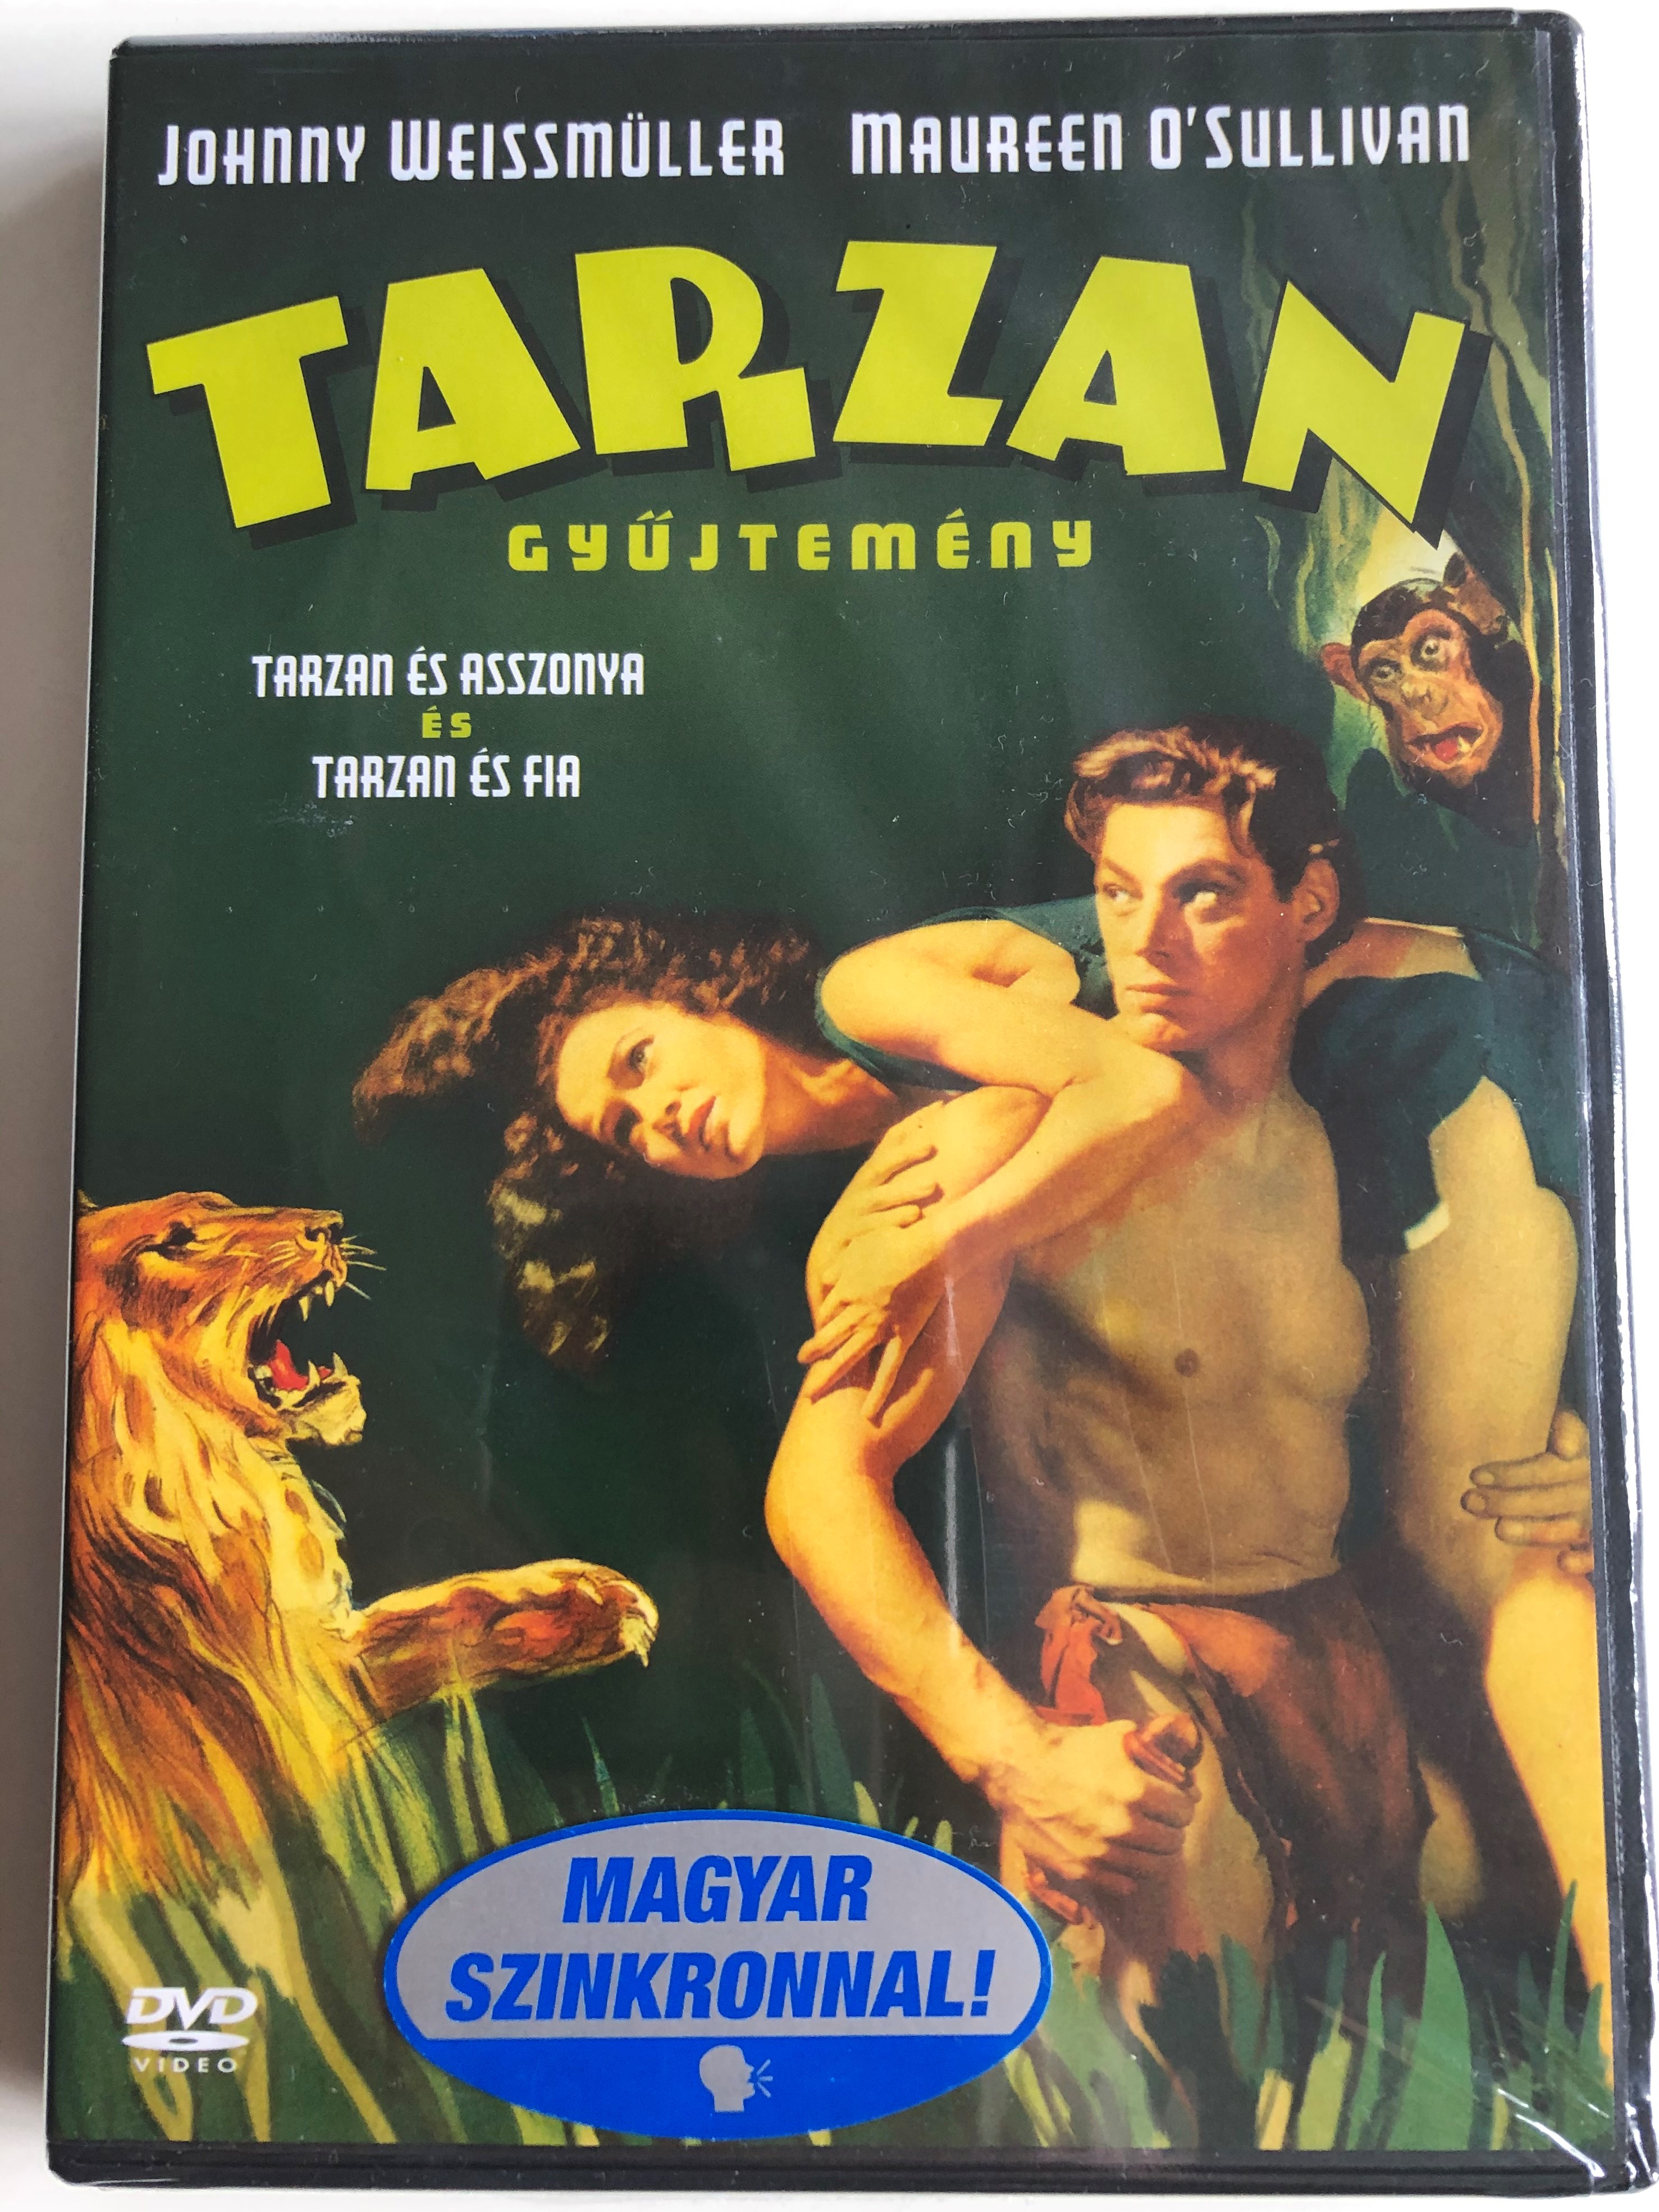 tarzan-collection-dvd-1934-tarzan-gy-jtem-ny-1.jpg